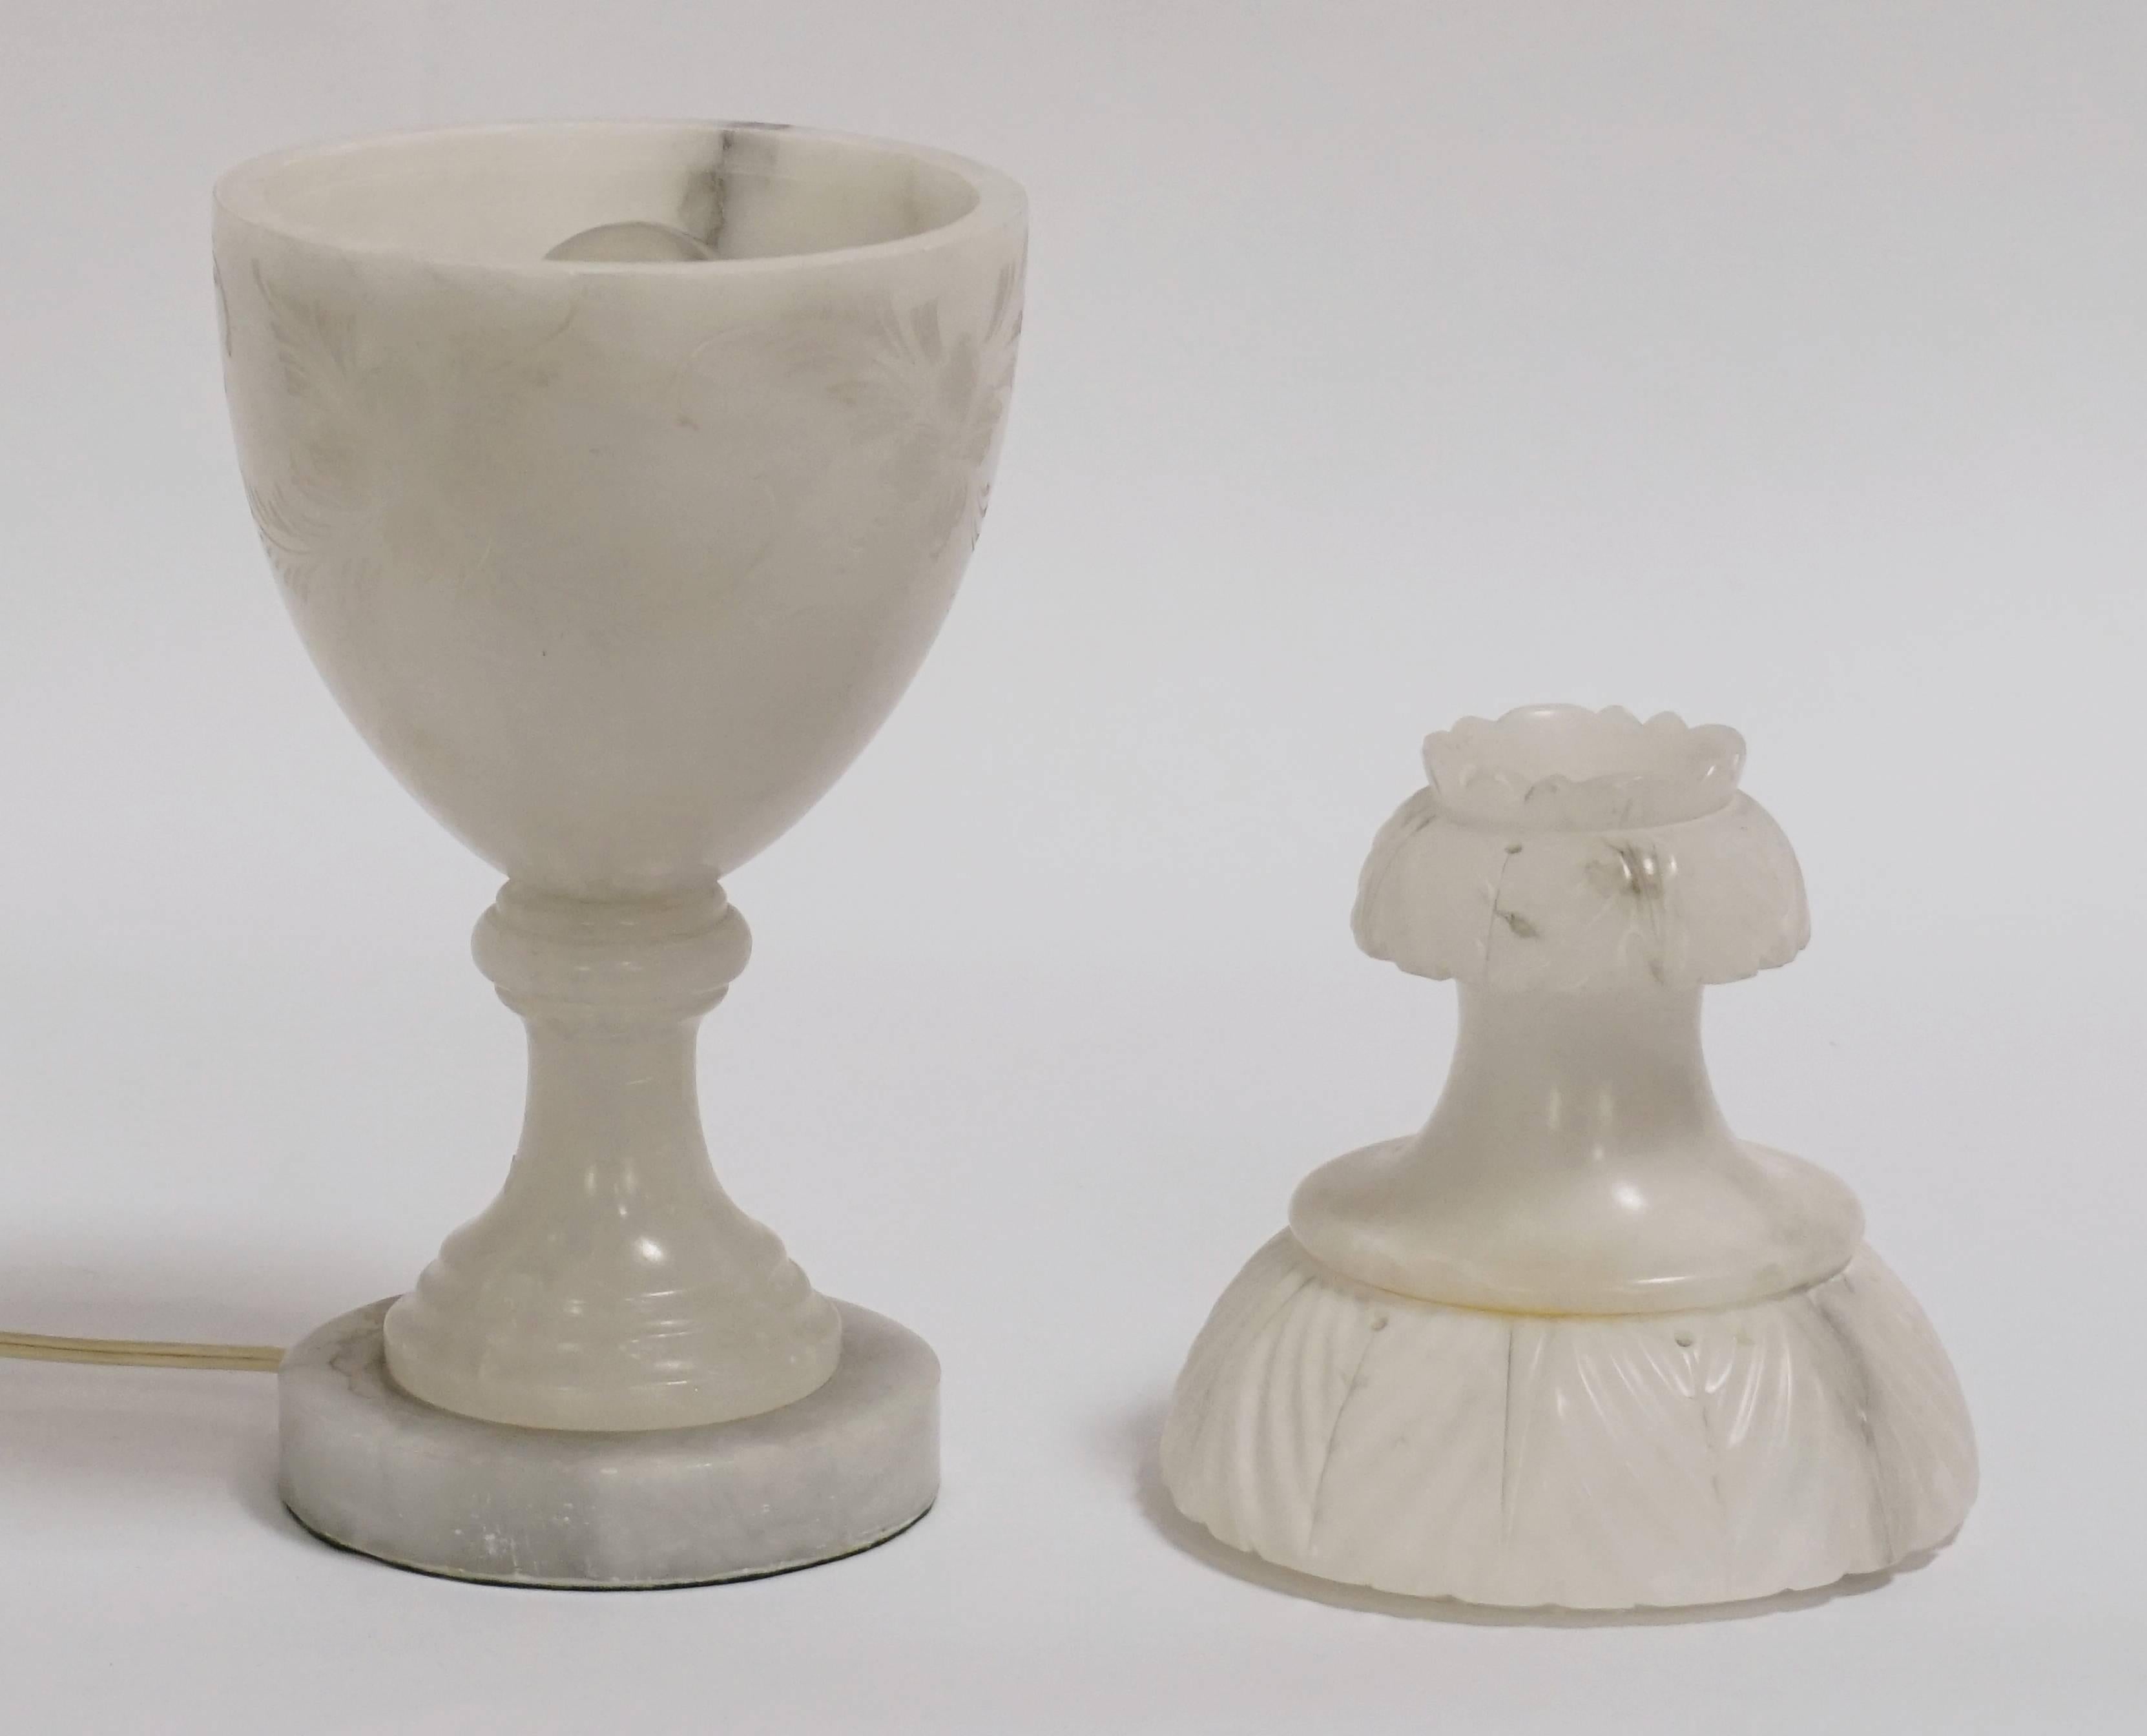 Hand-Carved Alabaster Urn Lamp with Floral Motif